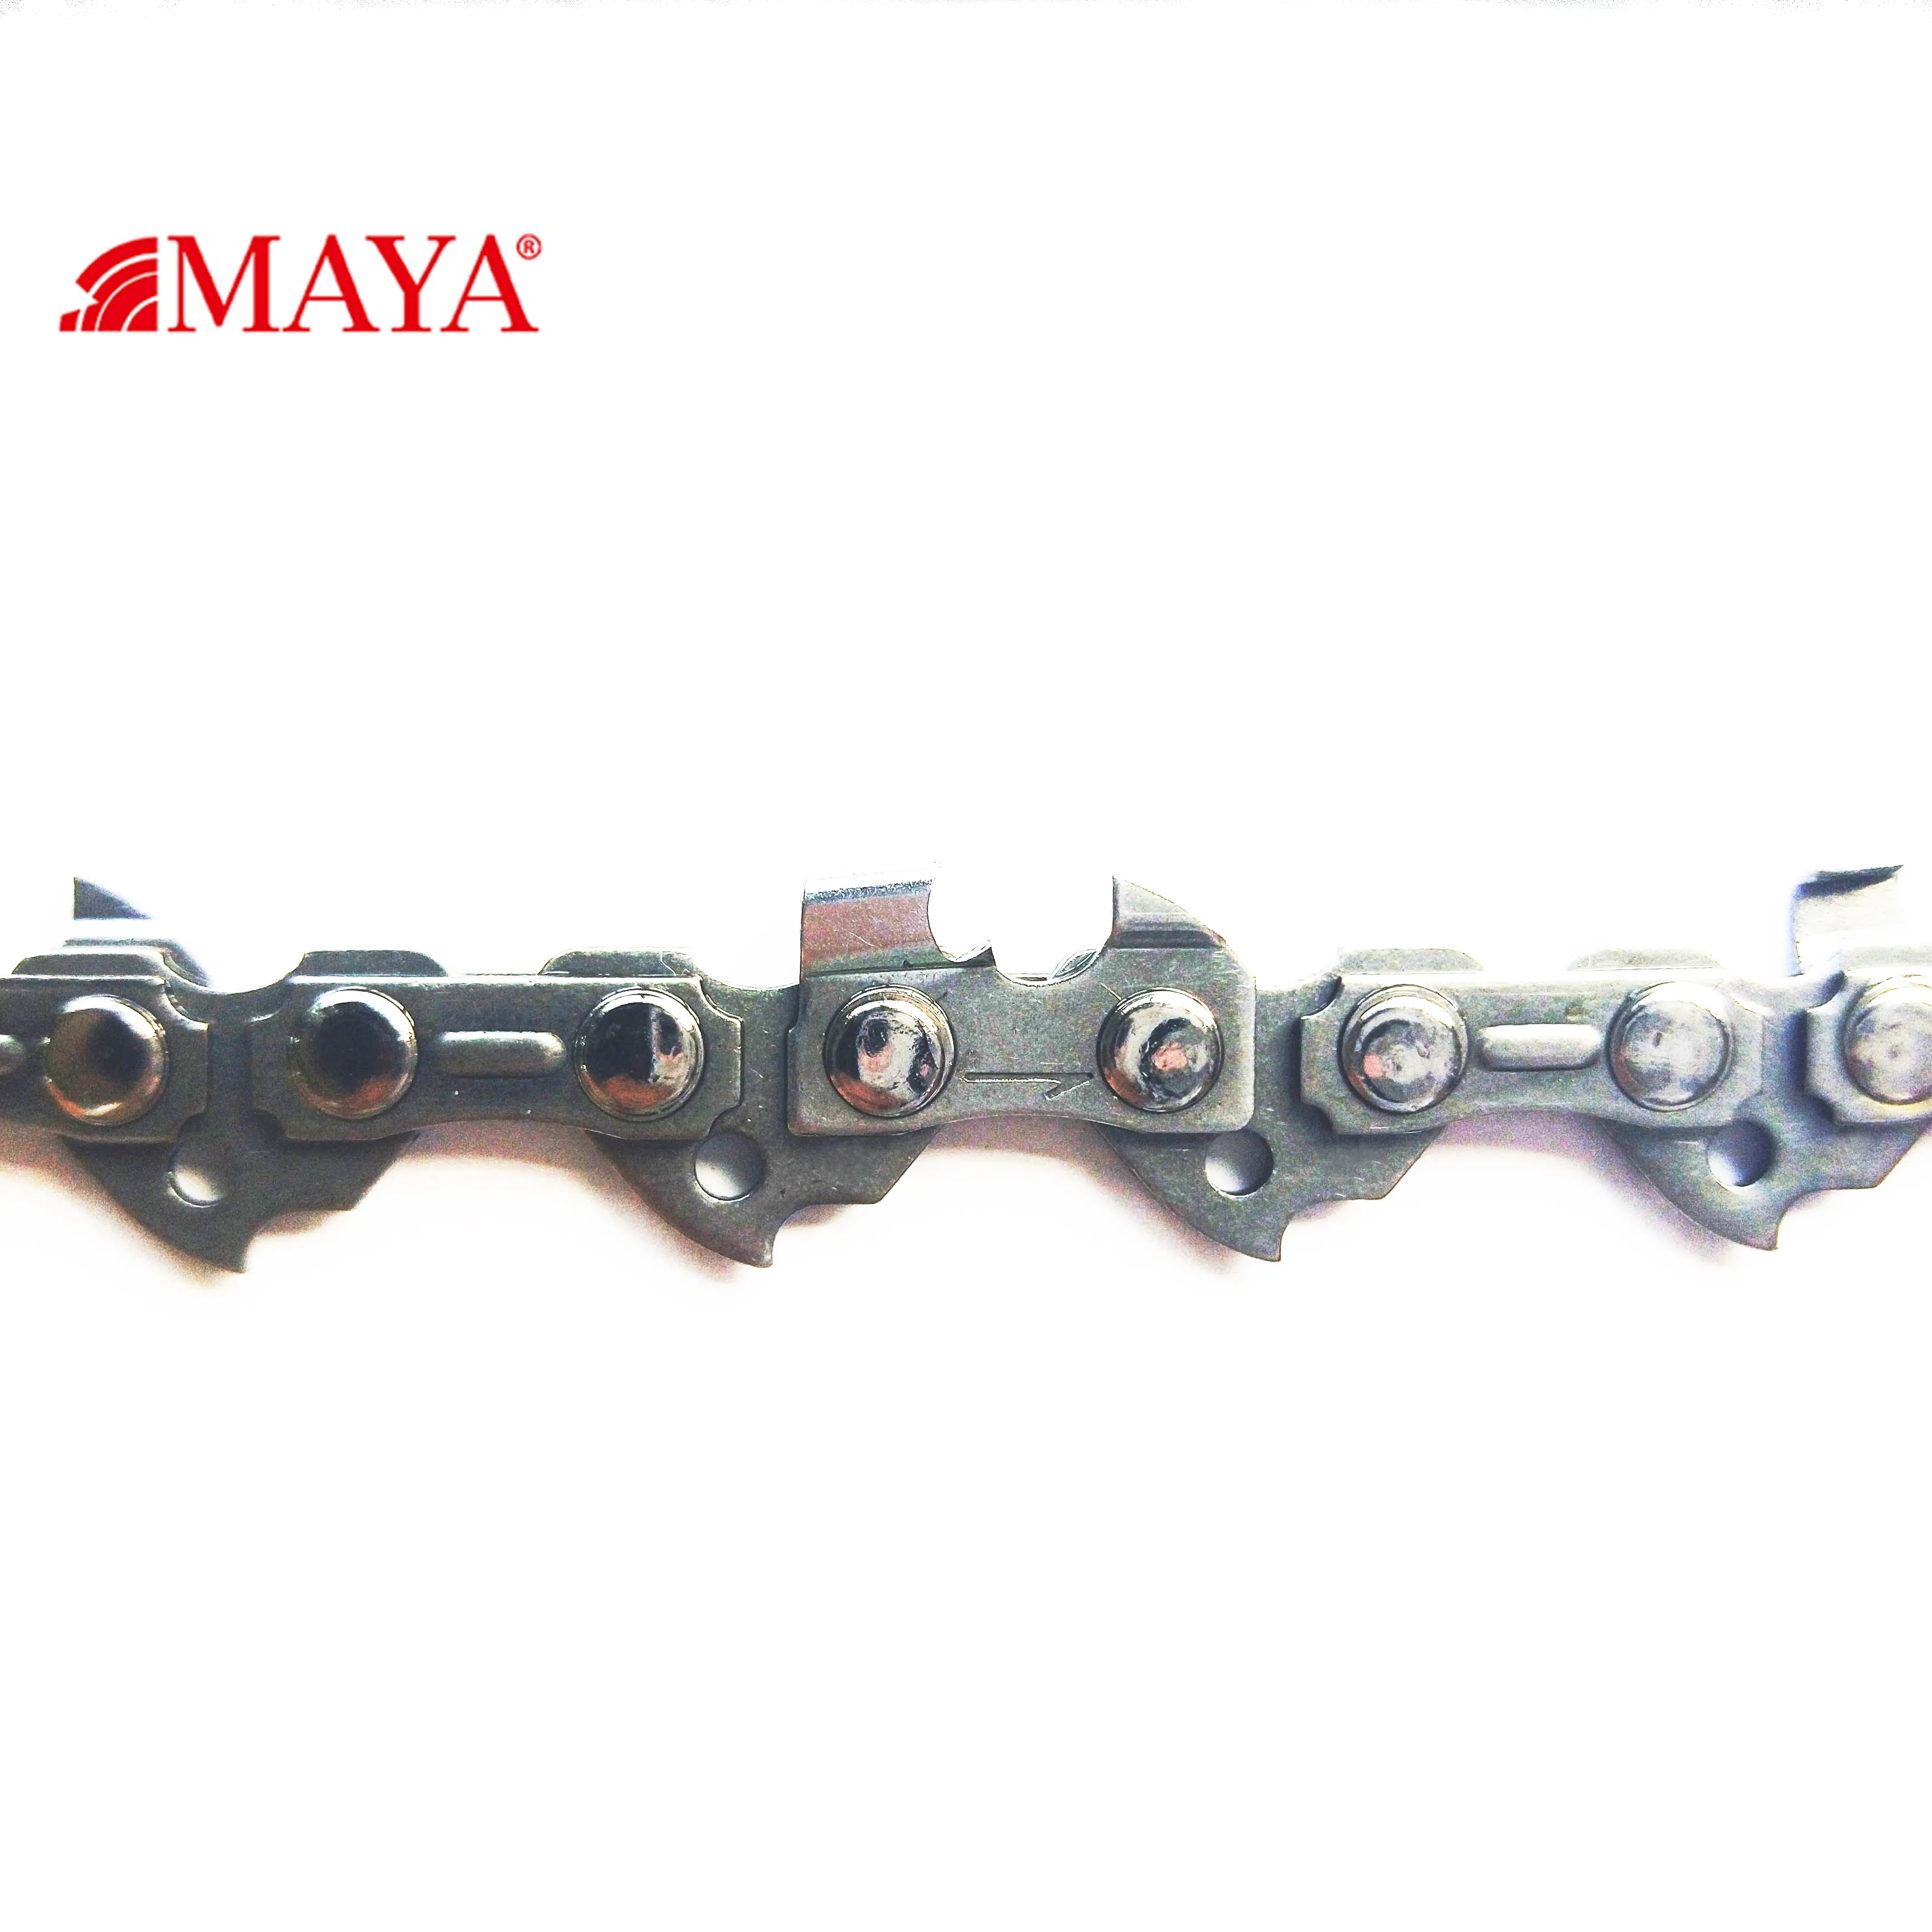 Qirui MAYA 14 14" 50 drive links chain saw chainsaw chain for ms170